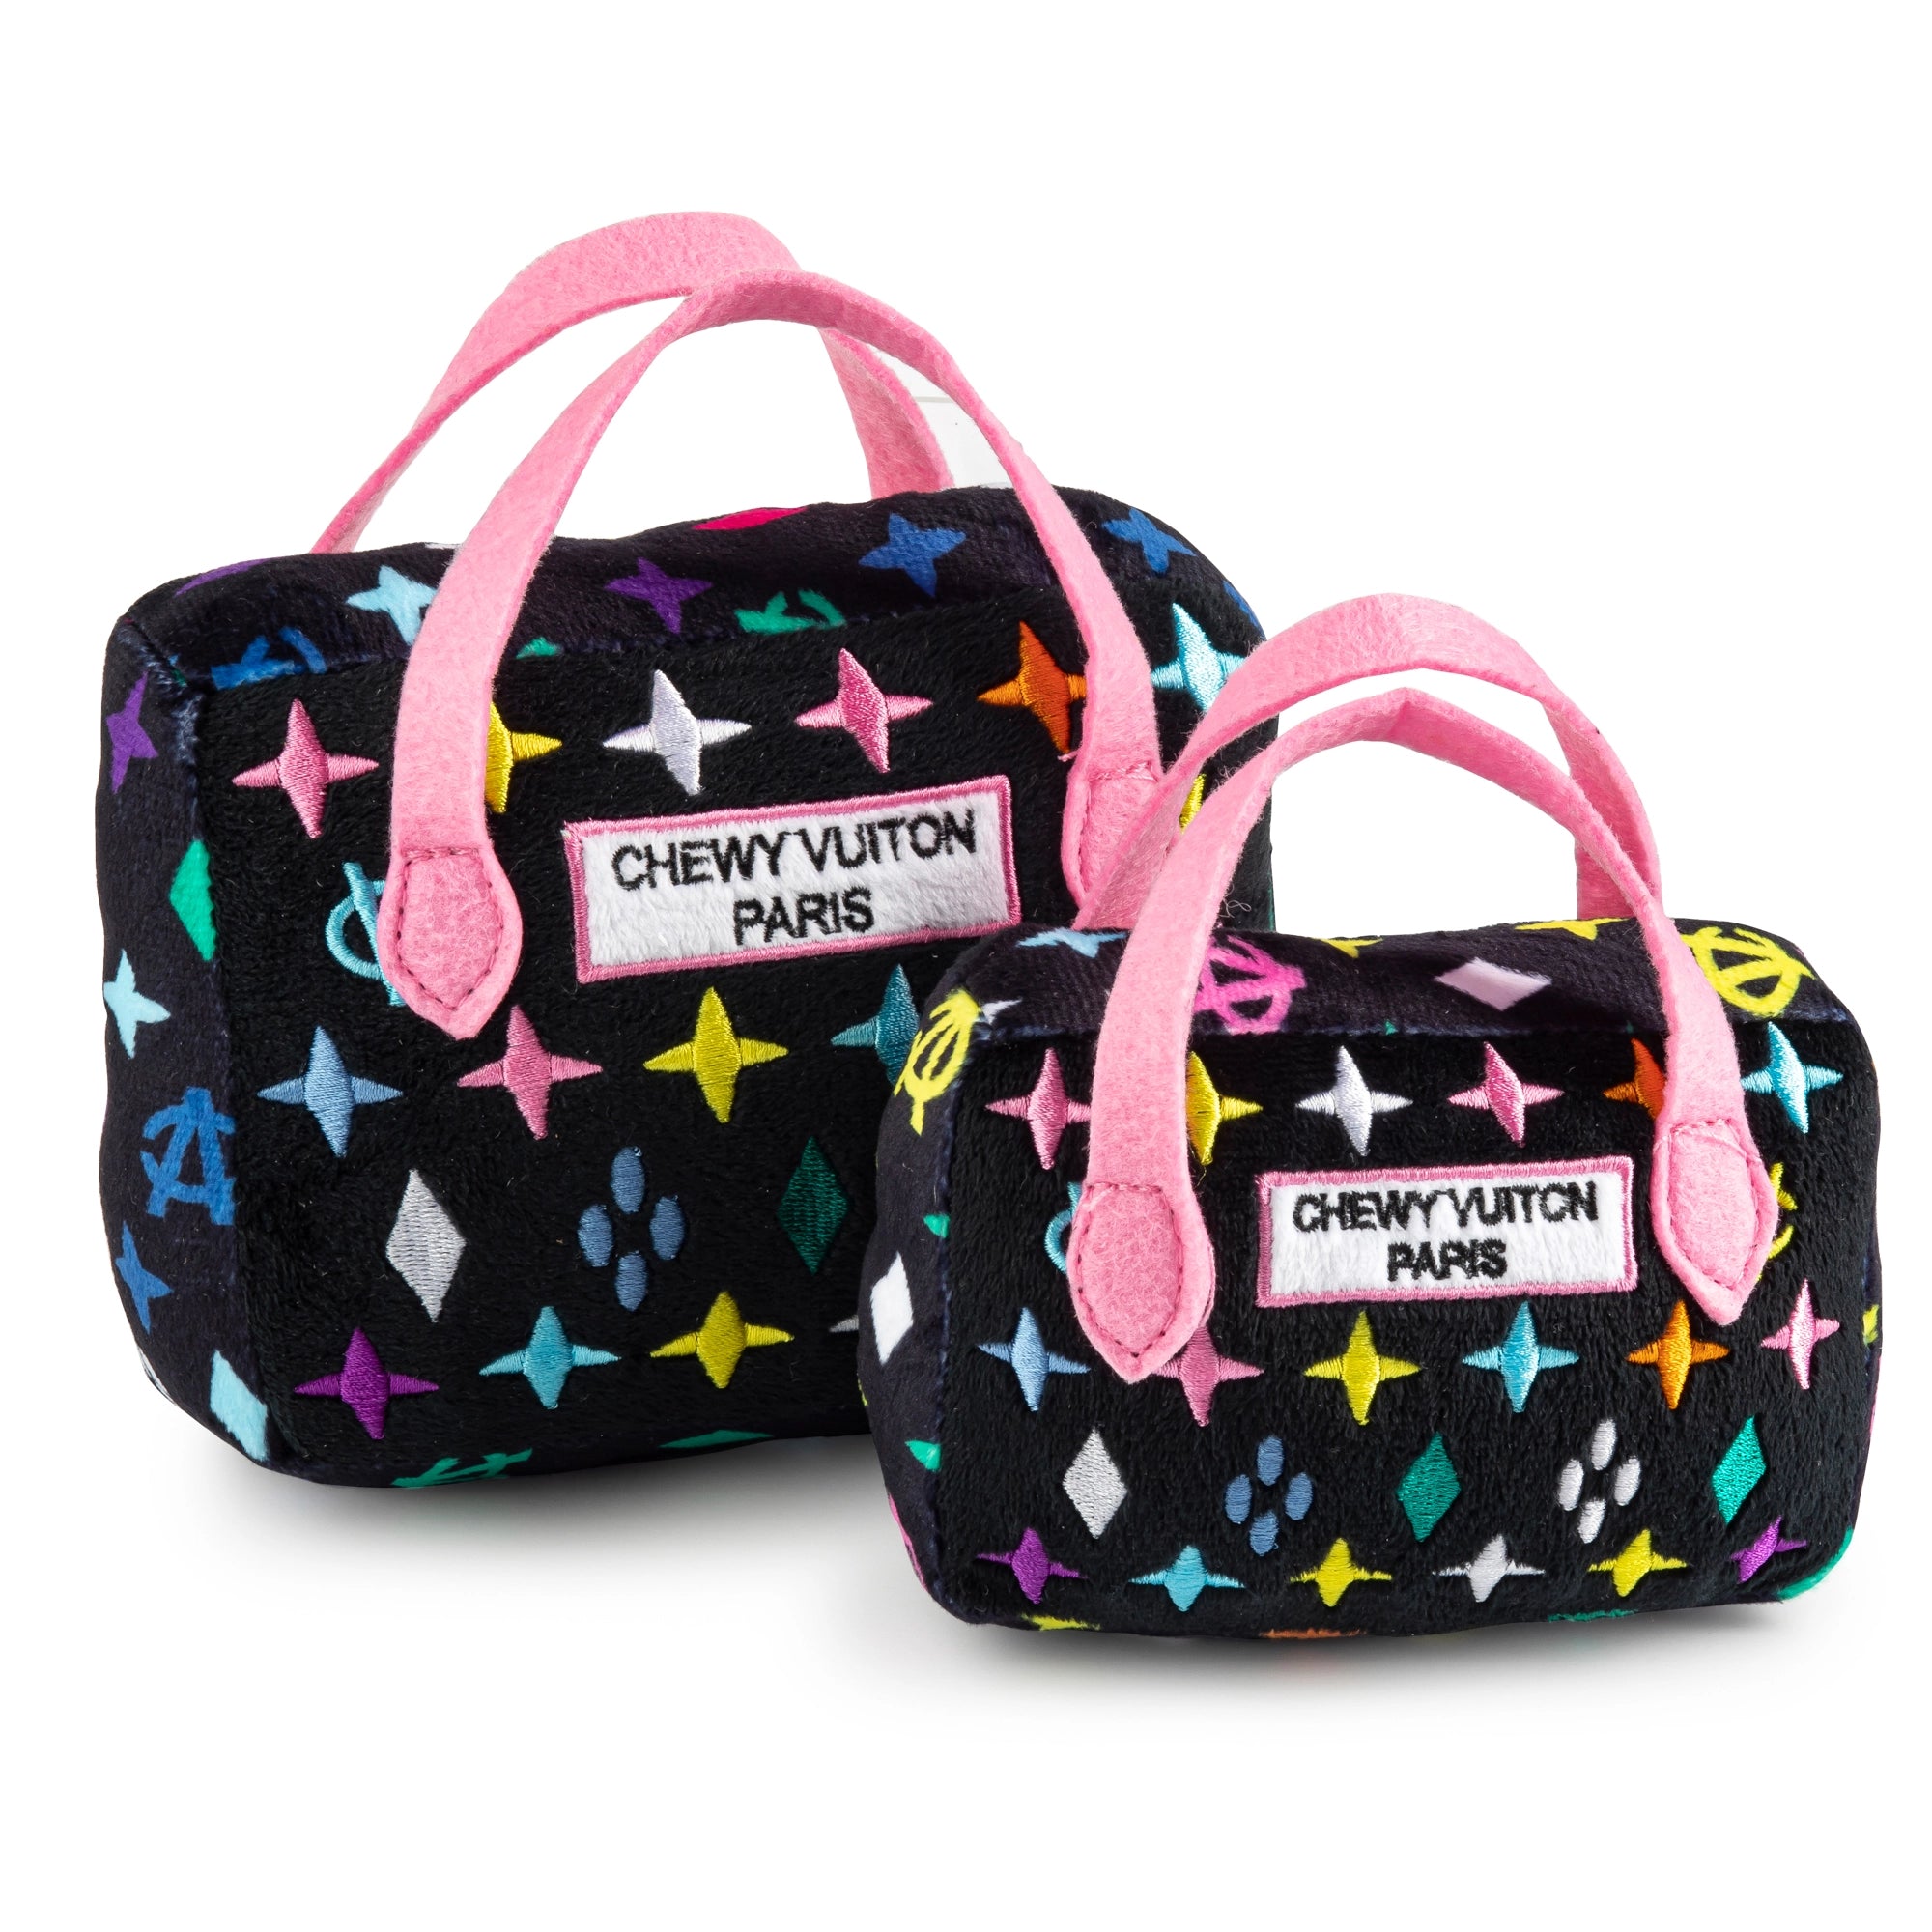 Pink Ombre Chewy Vuiton Handbag Squeaker Dog Toy – BellaJoJos